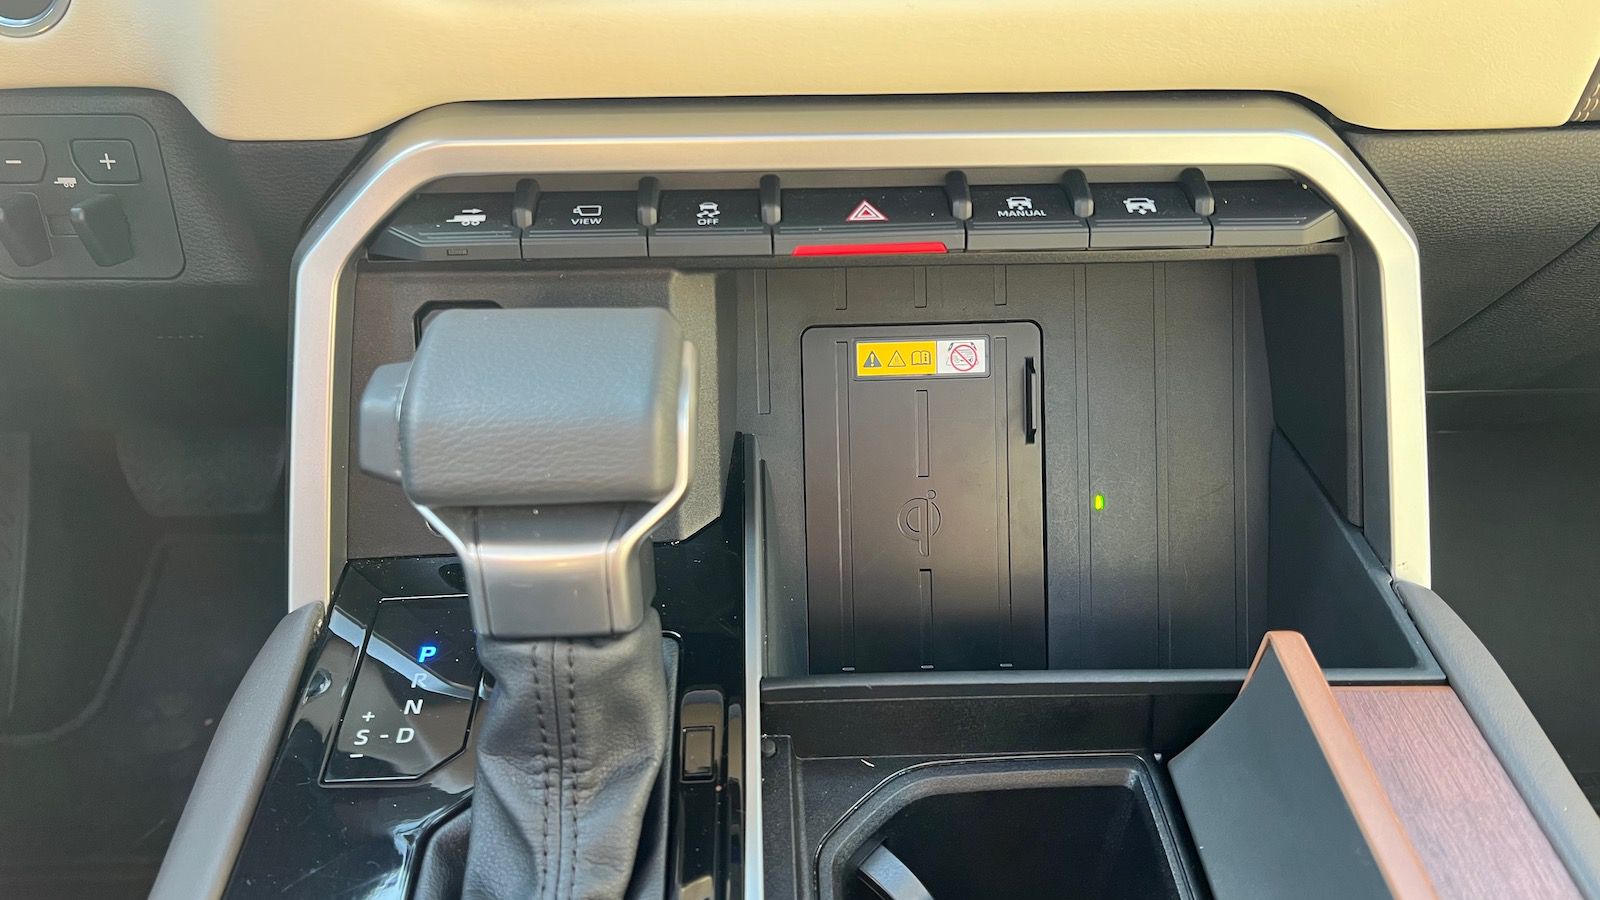 2022 Toyota Tundra Wireless CarPlay Review MacRumors